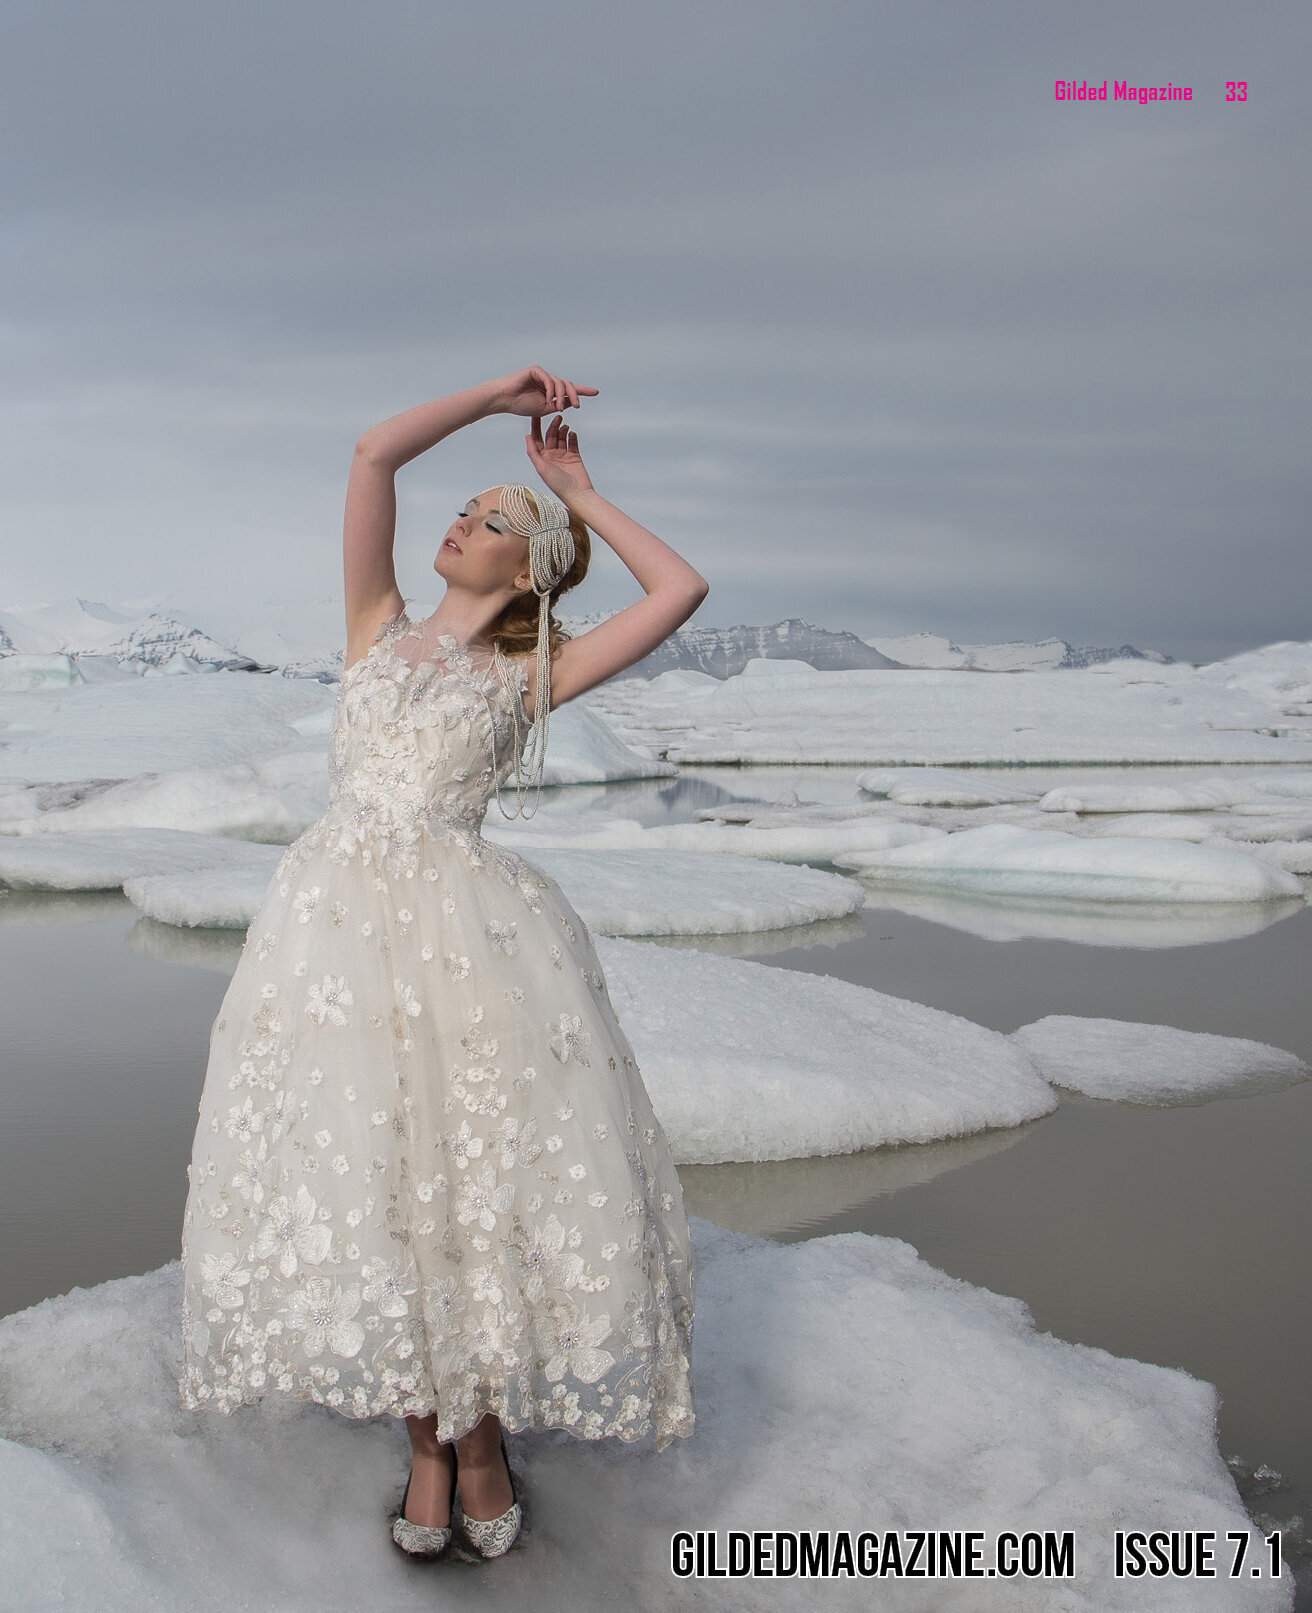 gilded magazine-Iceland-photoshoot-miss-aniela-jen-brook